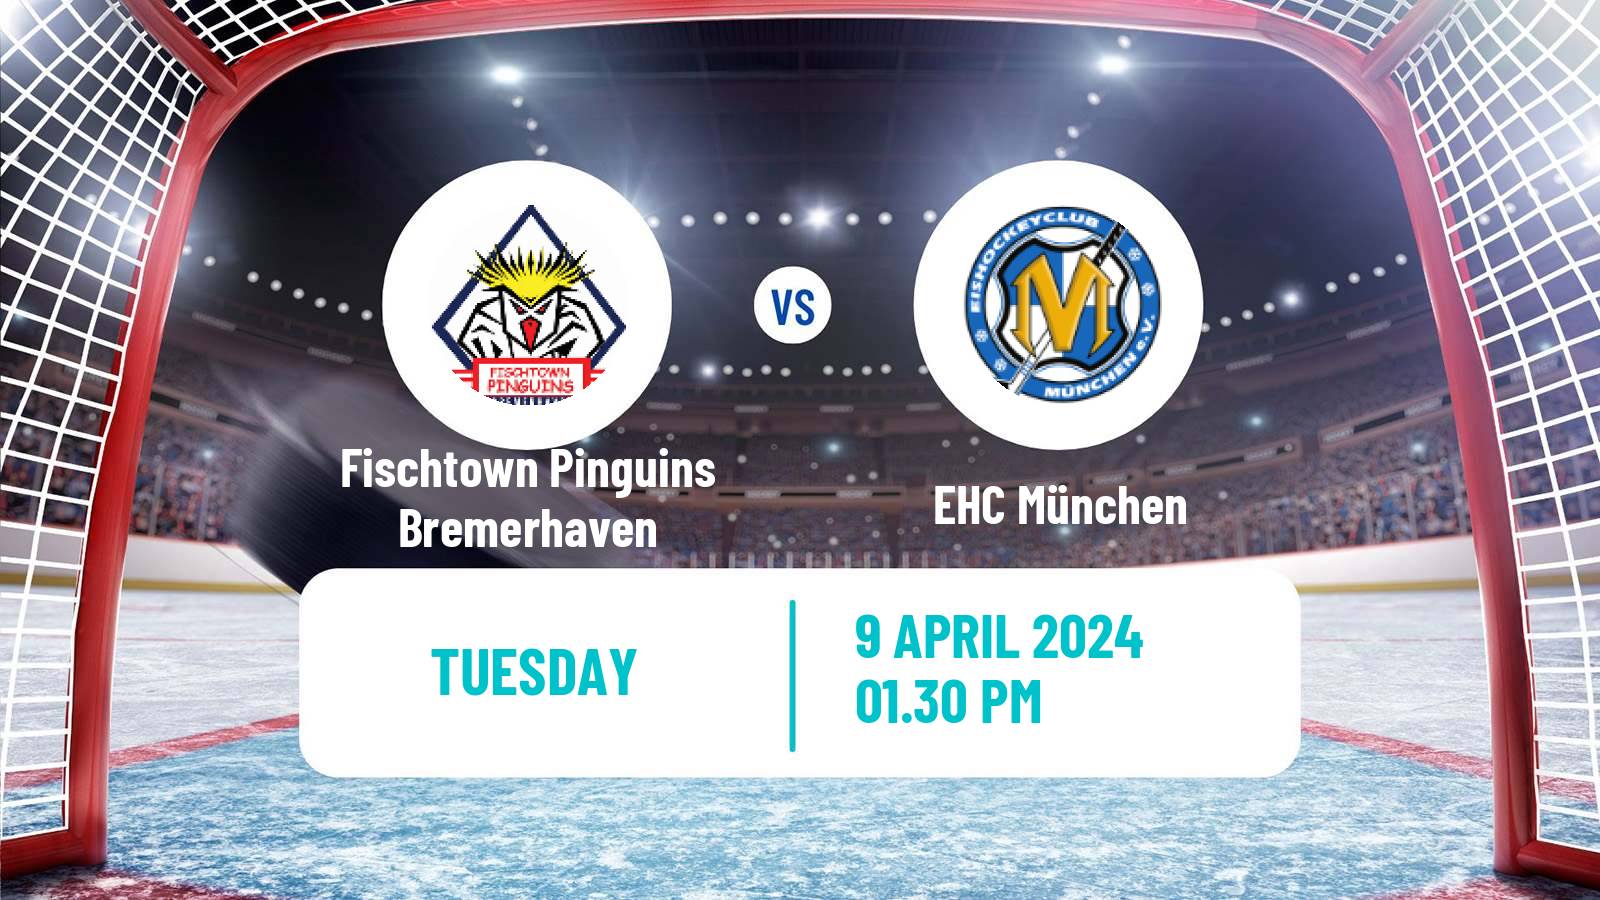 Hockey German Ice Hockey League Fischtown Pinguins Bremerhaven - EHC München